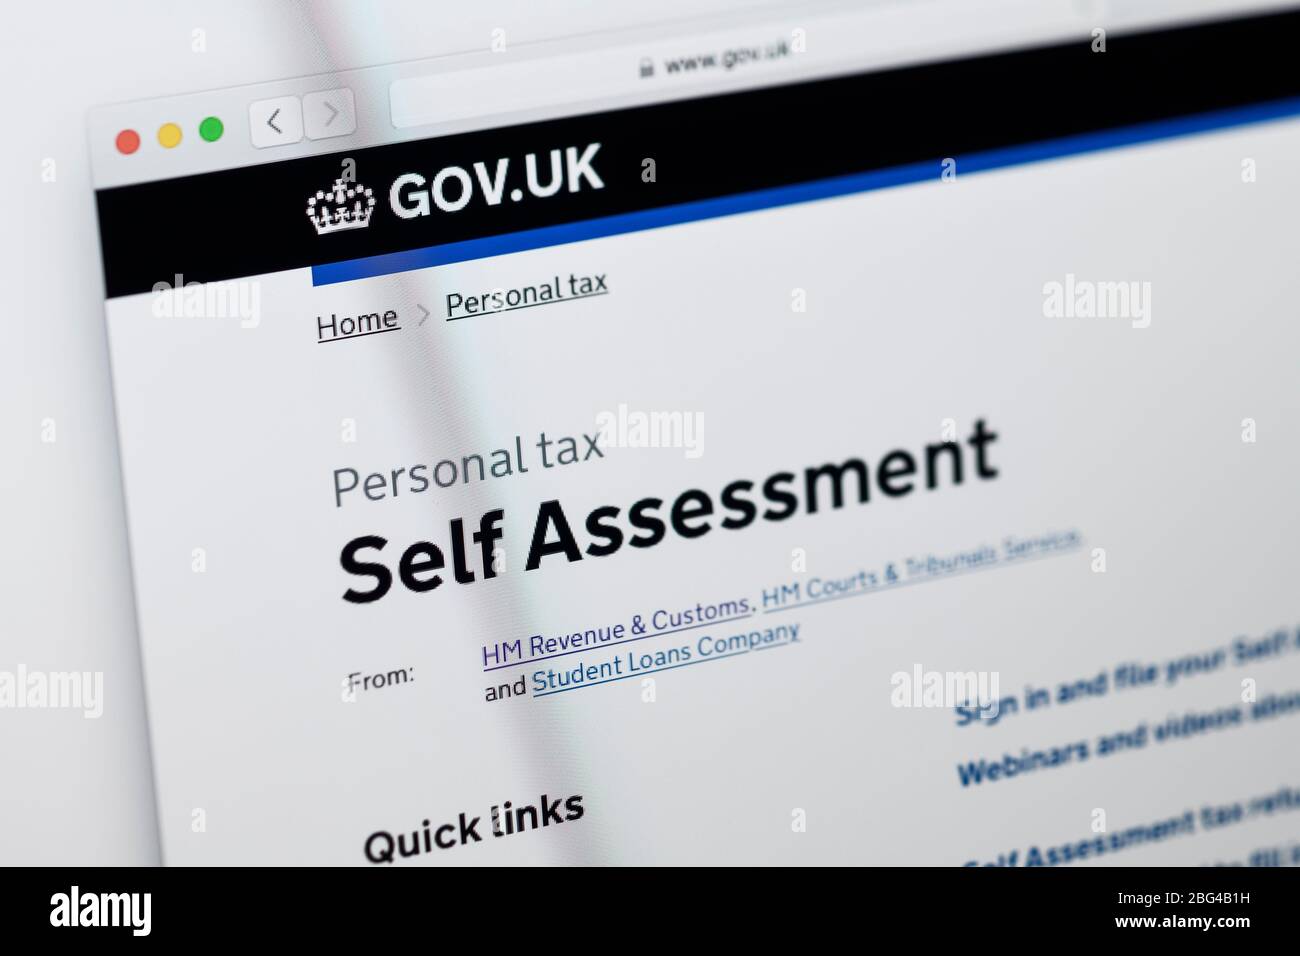 Detalle de la página principal del sitio web del gobierno británico que muestra información para la autoevaluación Foto de stock